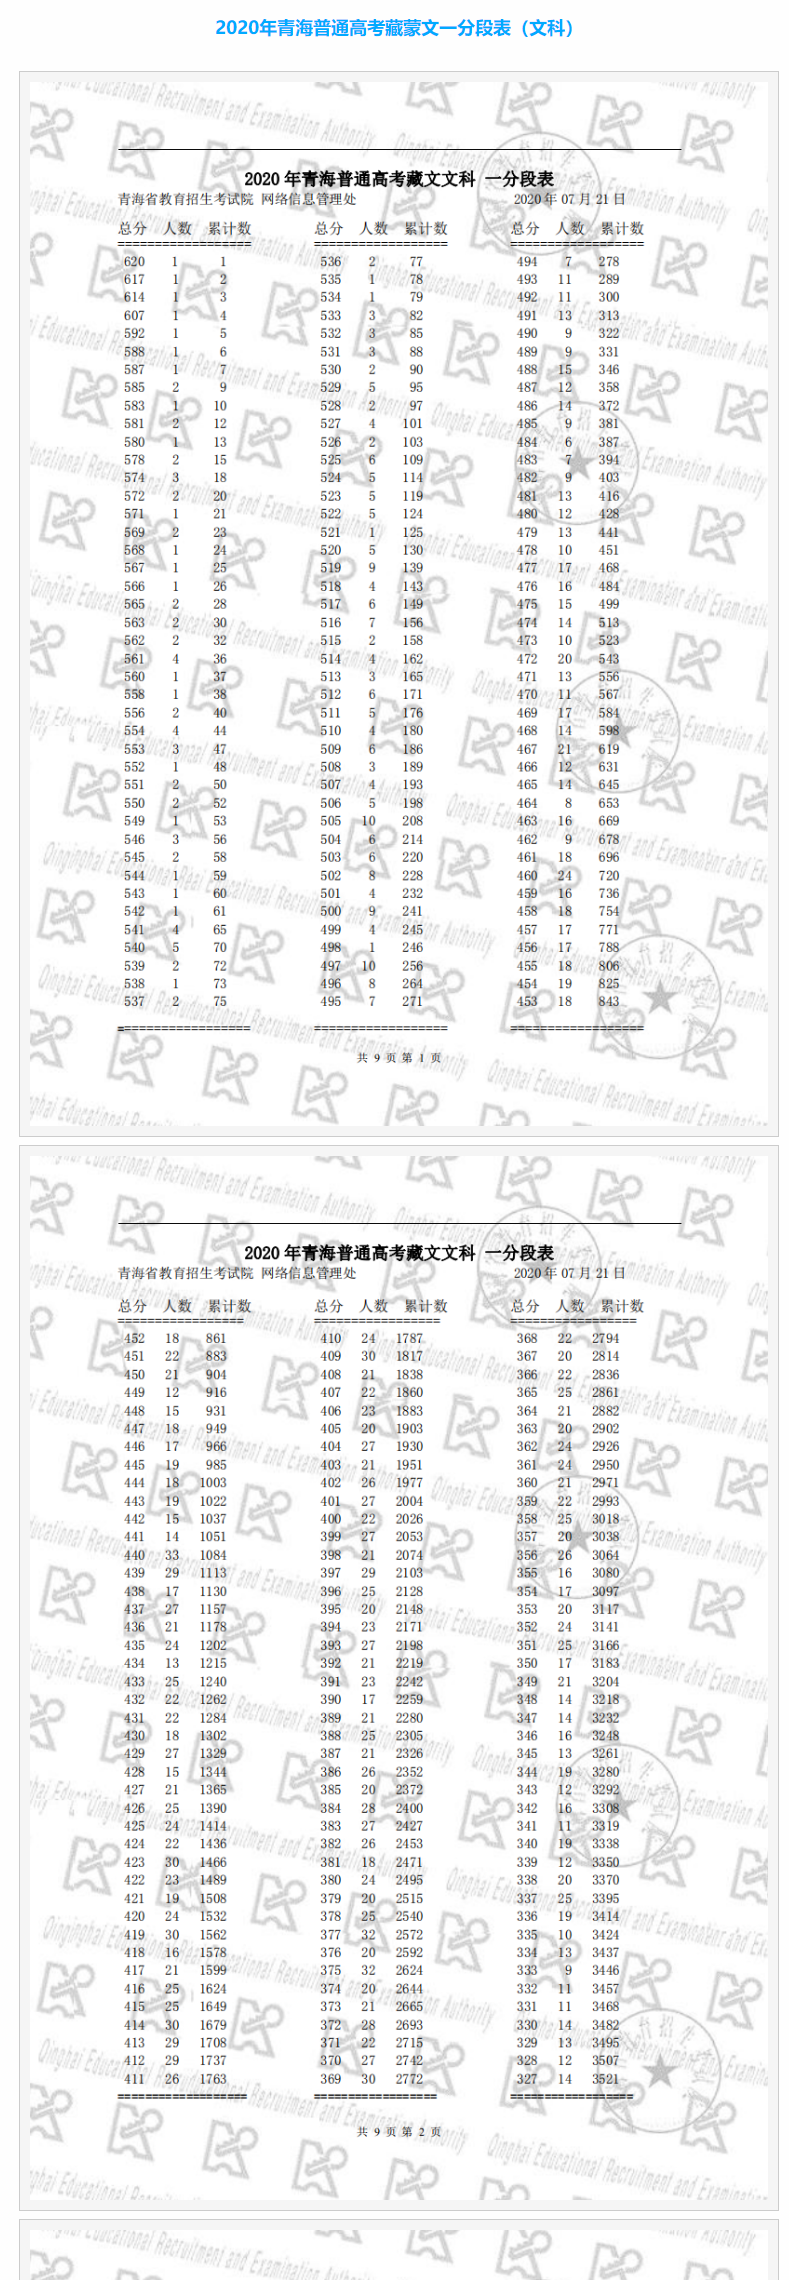 2021青海藏文文科高考一分一段表排名